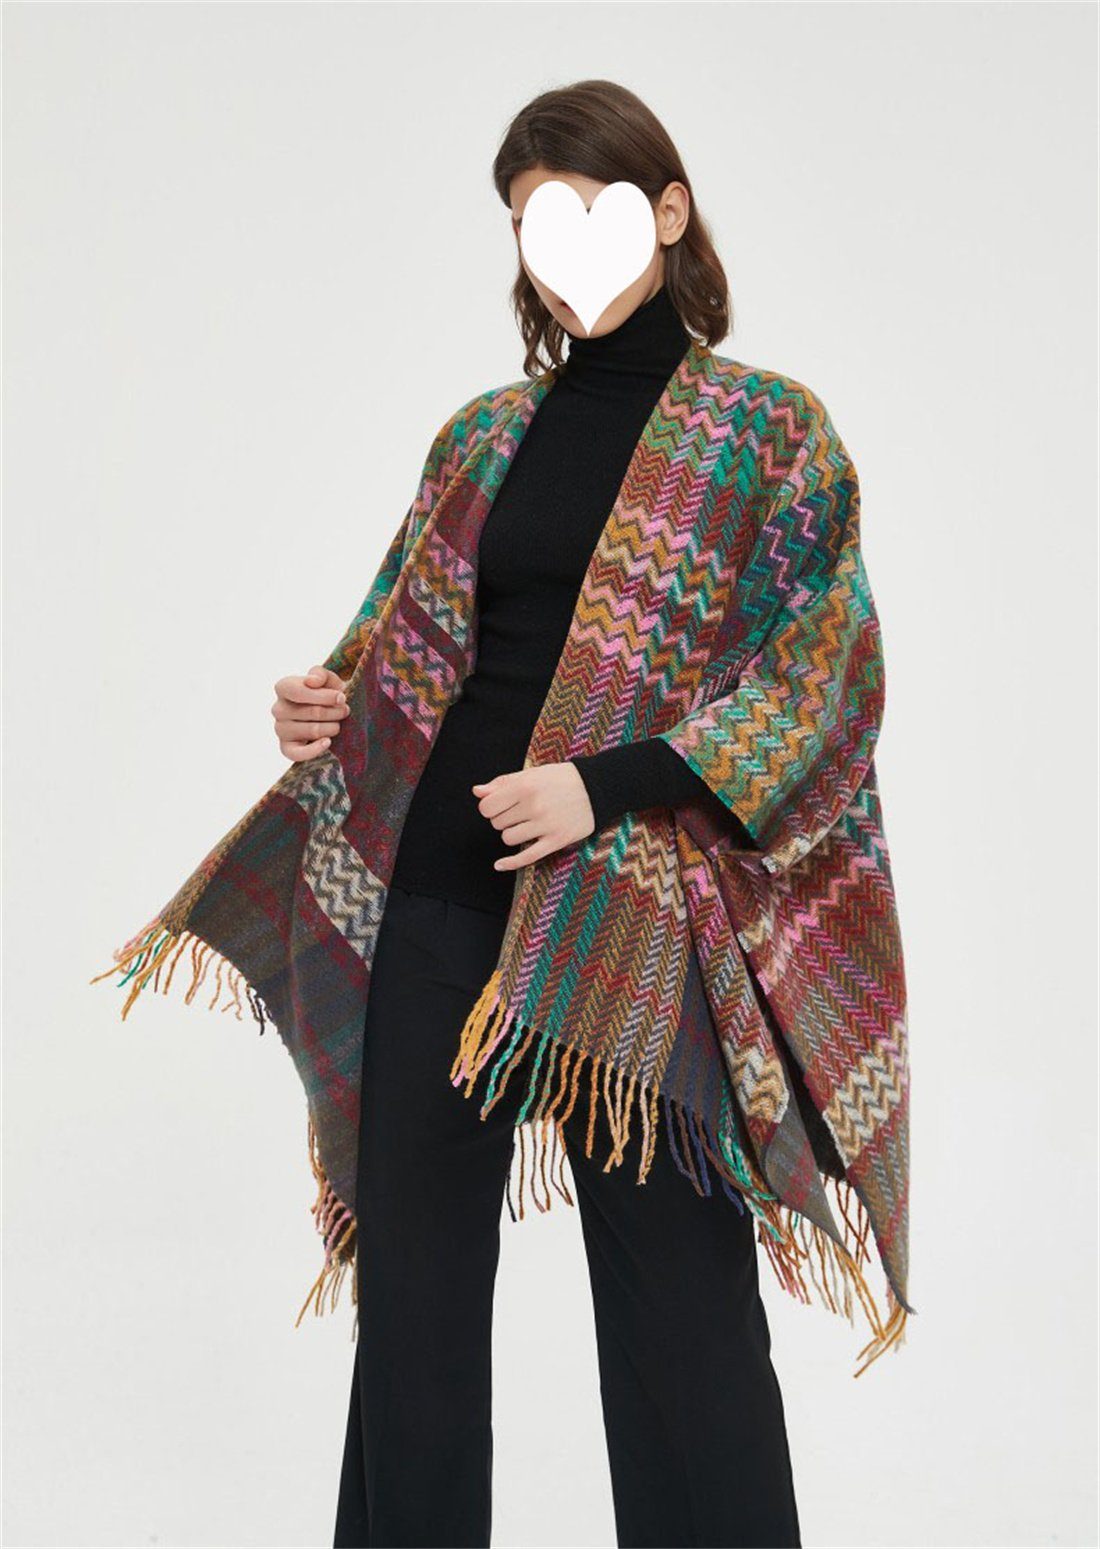 DÖRÖY Modeschal Damen Stil Retro Schal warmen Winter Quasten Umhang Schal, ethnischen